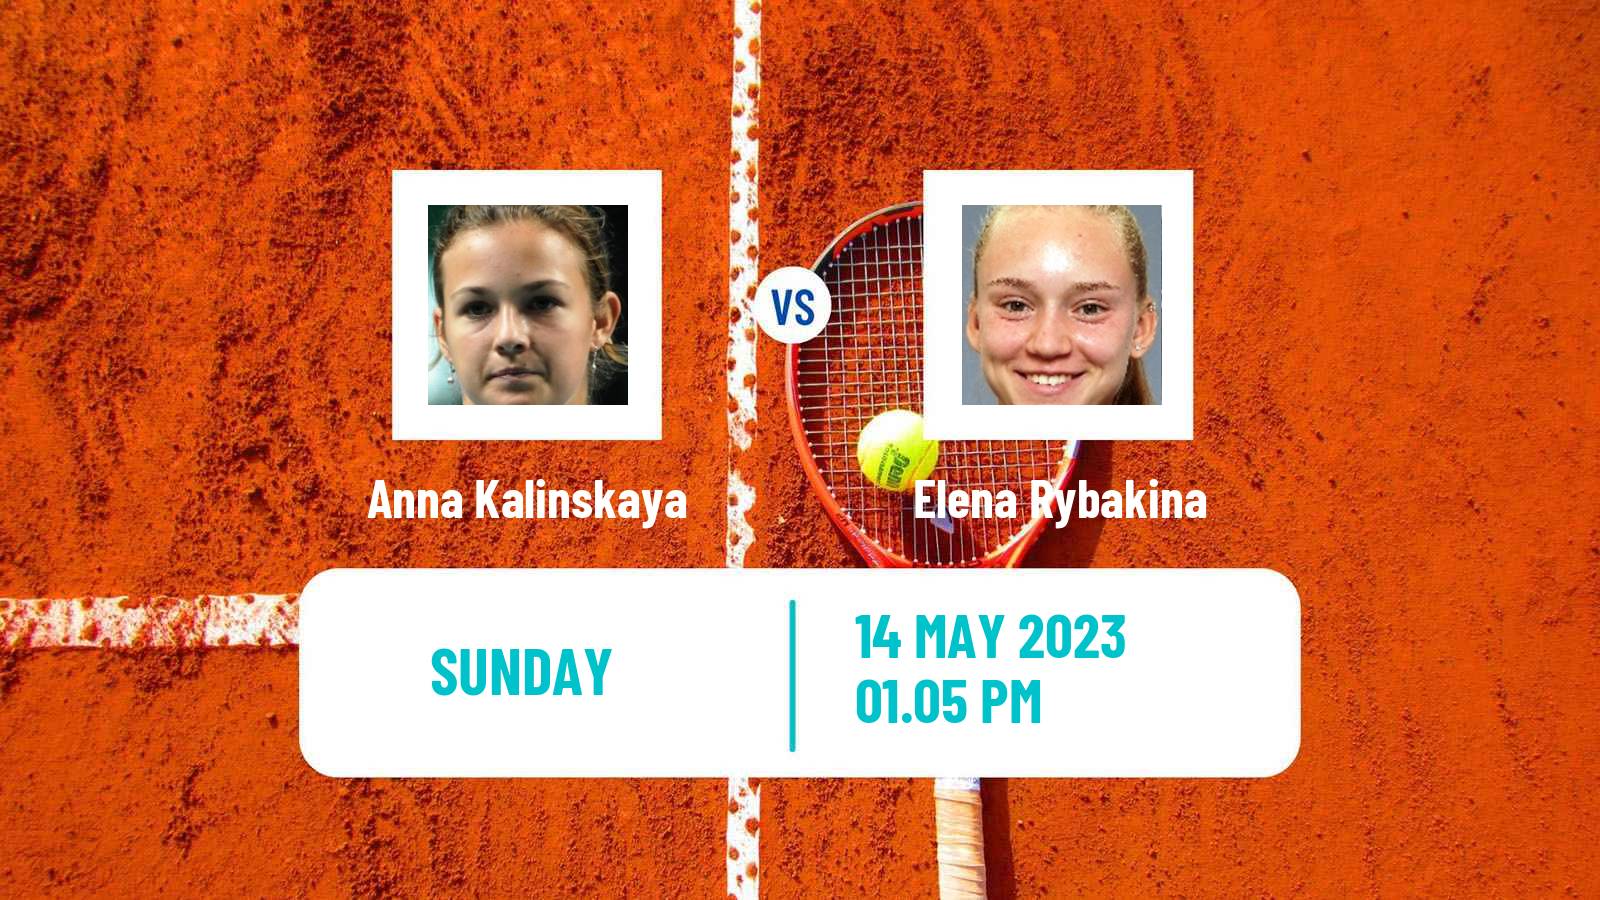 Tennis WTA Roma Anna Kalinskaya - Elena Rybakina